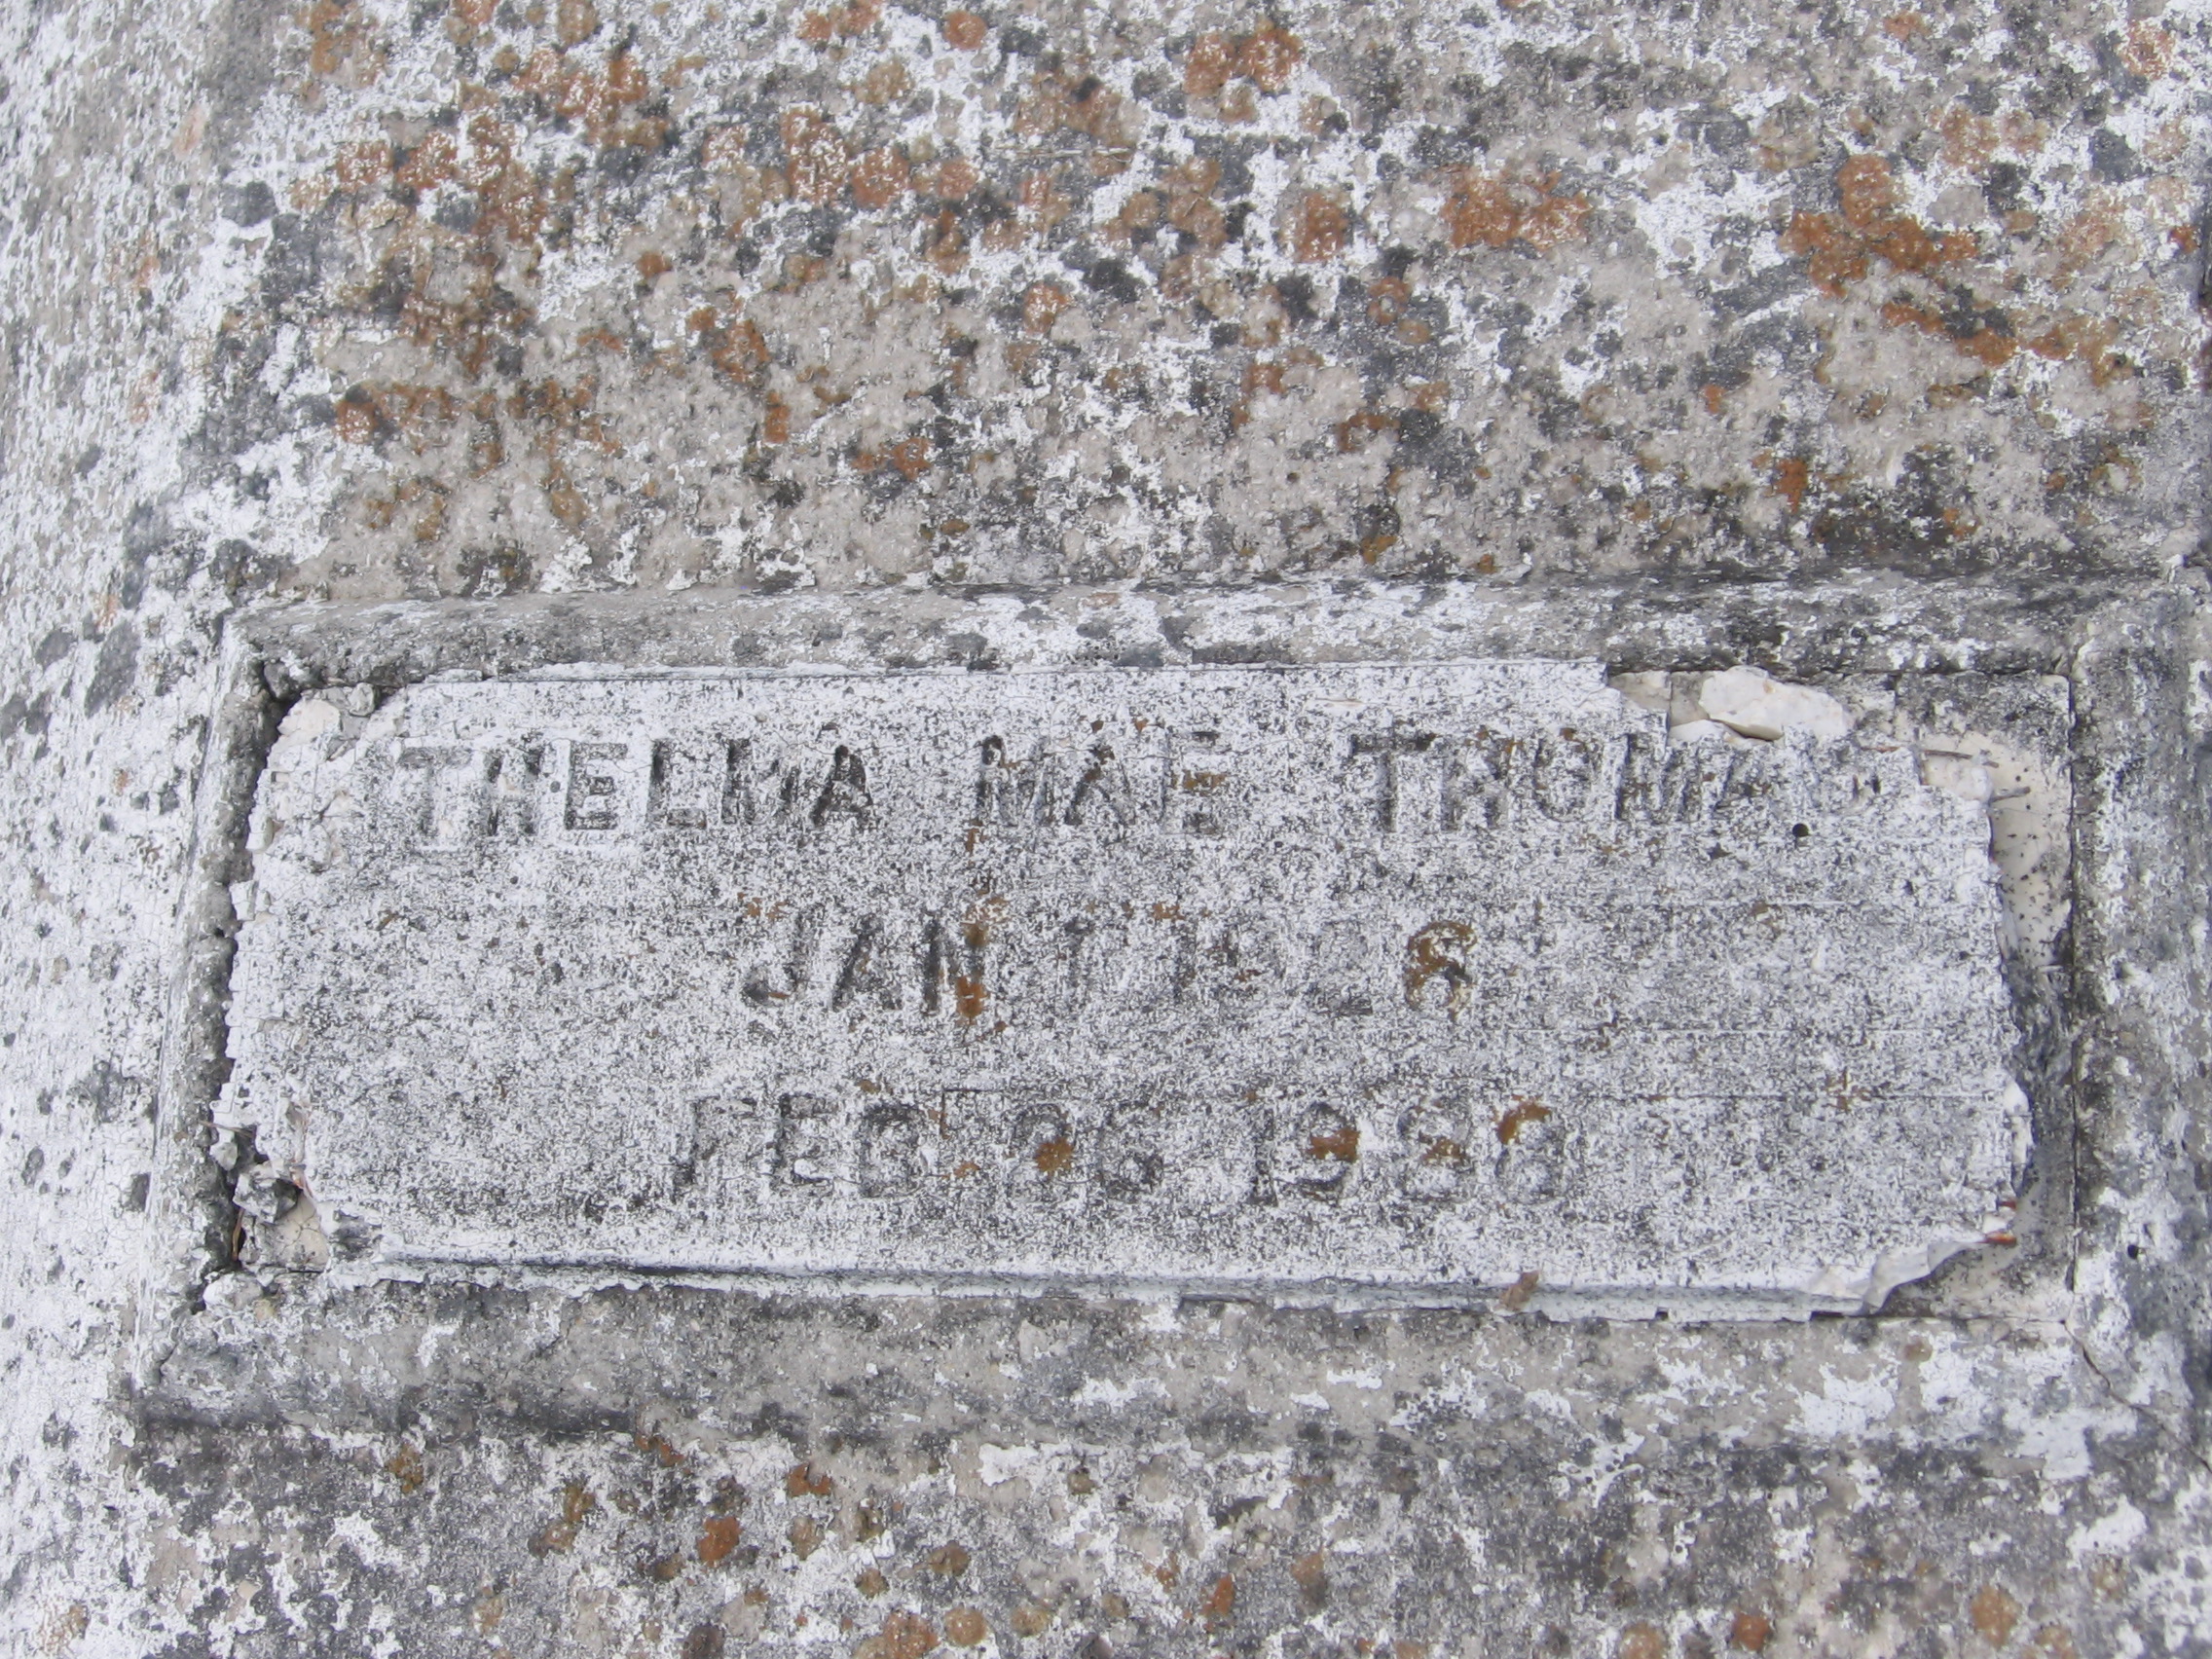 Thelma Mae Thomas